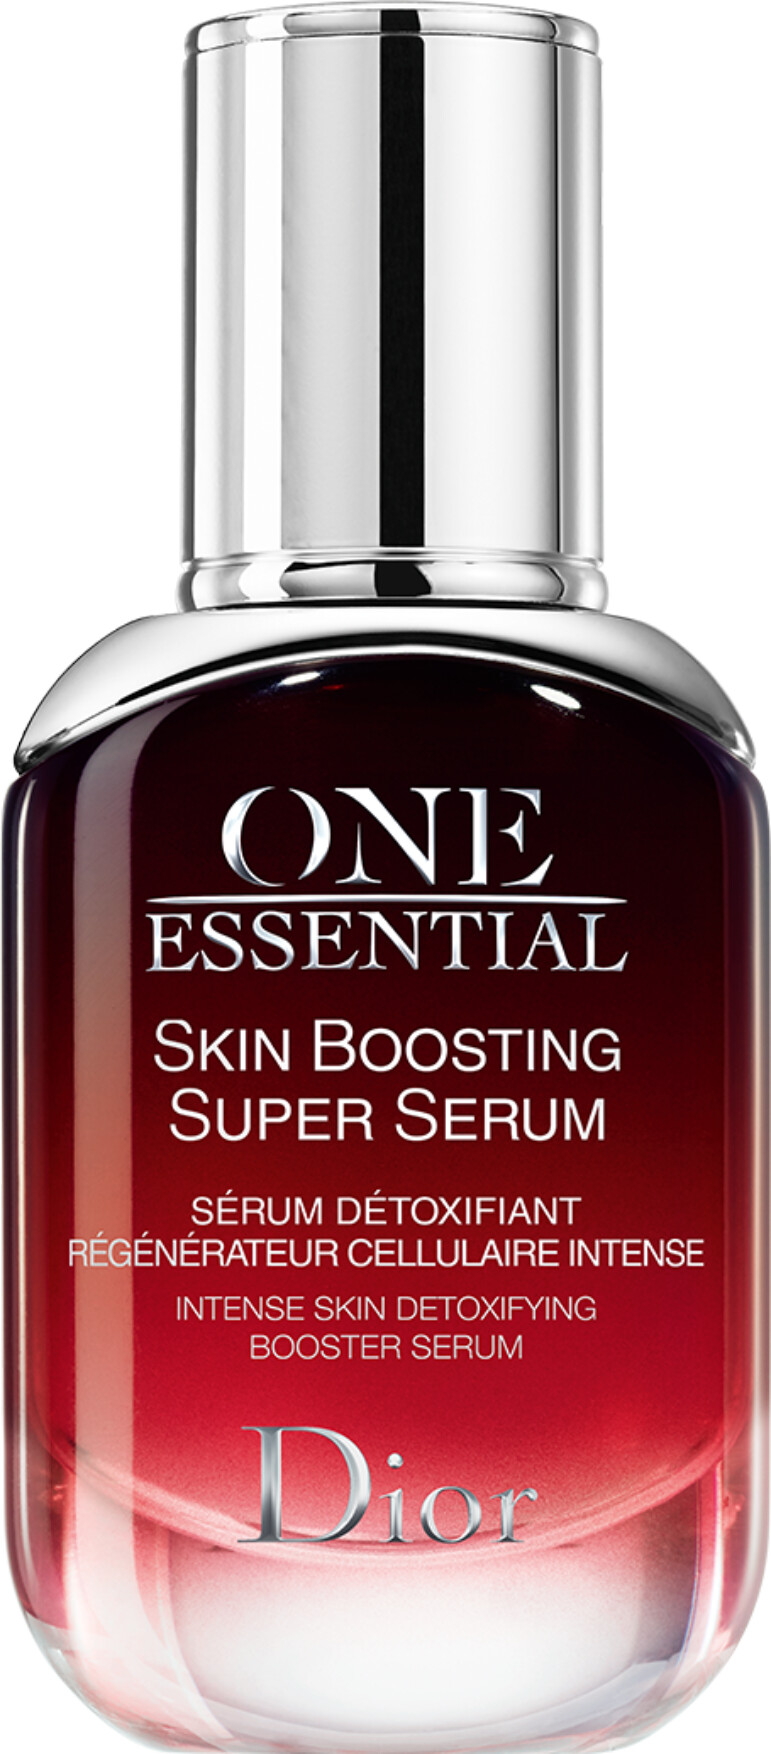 Skin Detoxifying Booster Serum